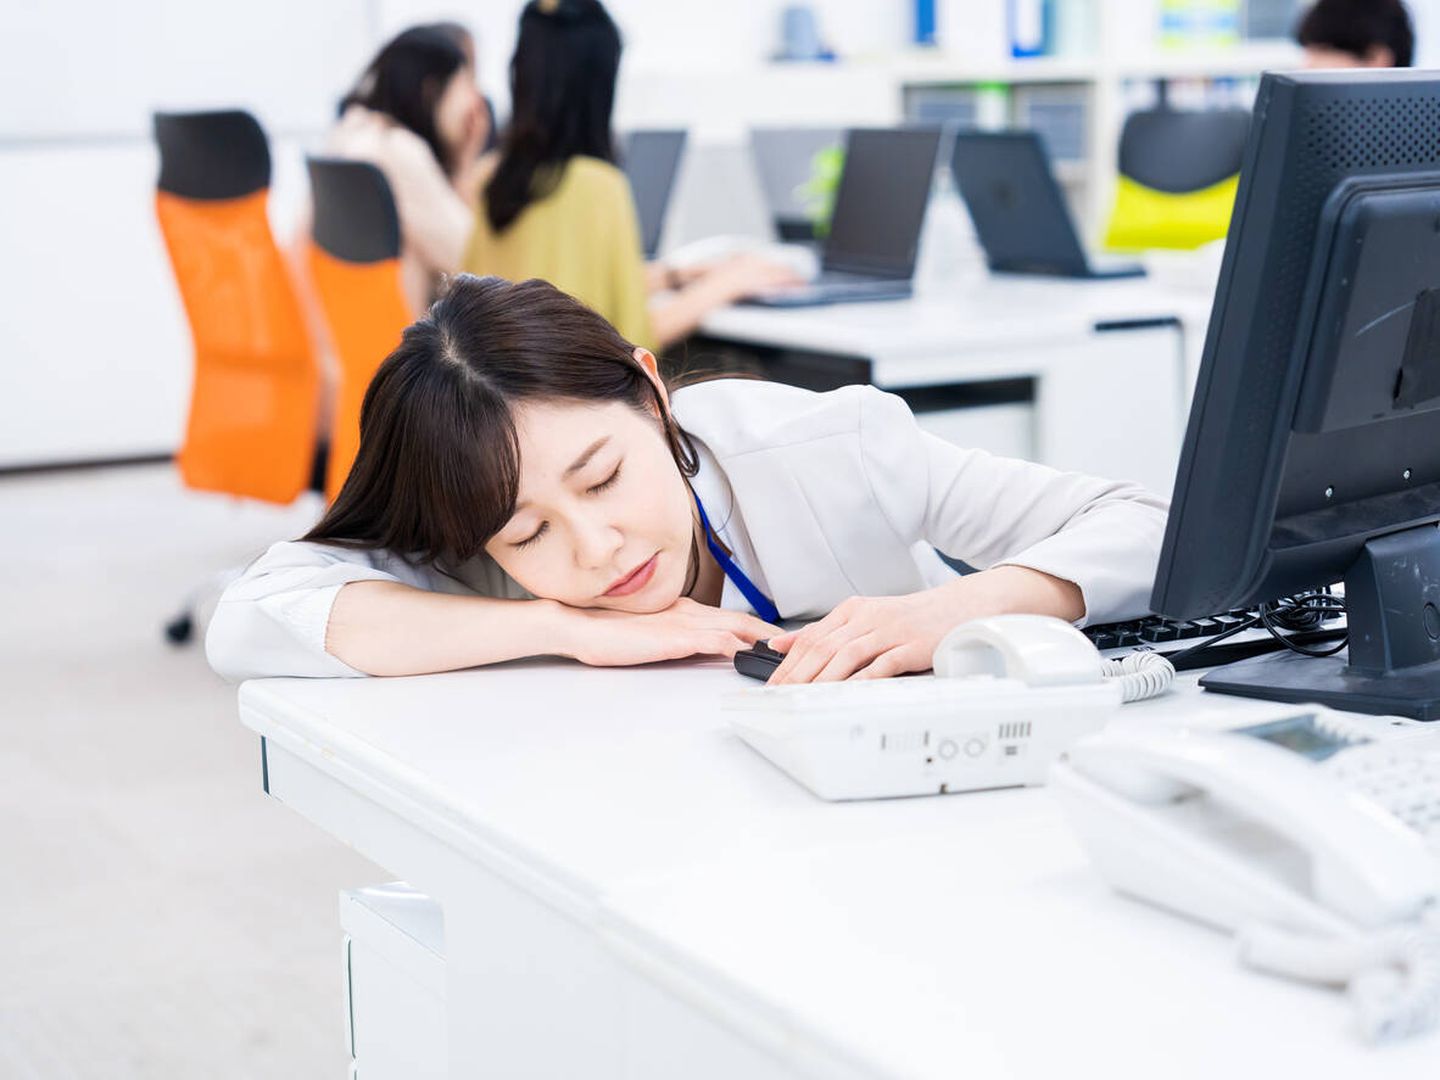 Una chica durmiendo en el trabajo (iStock)